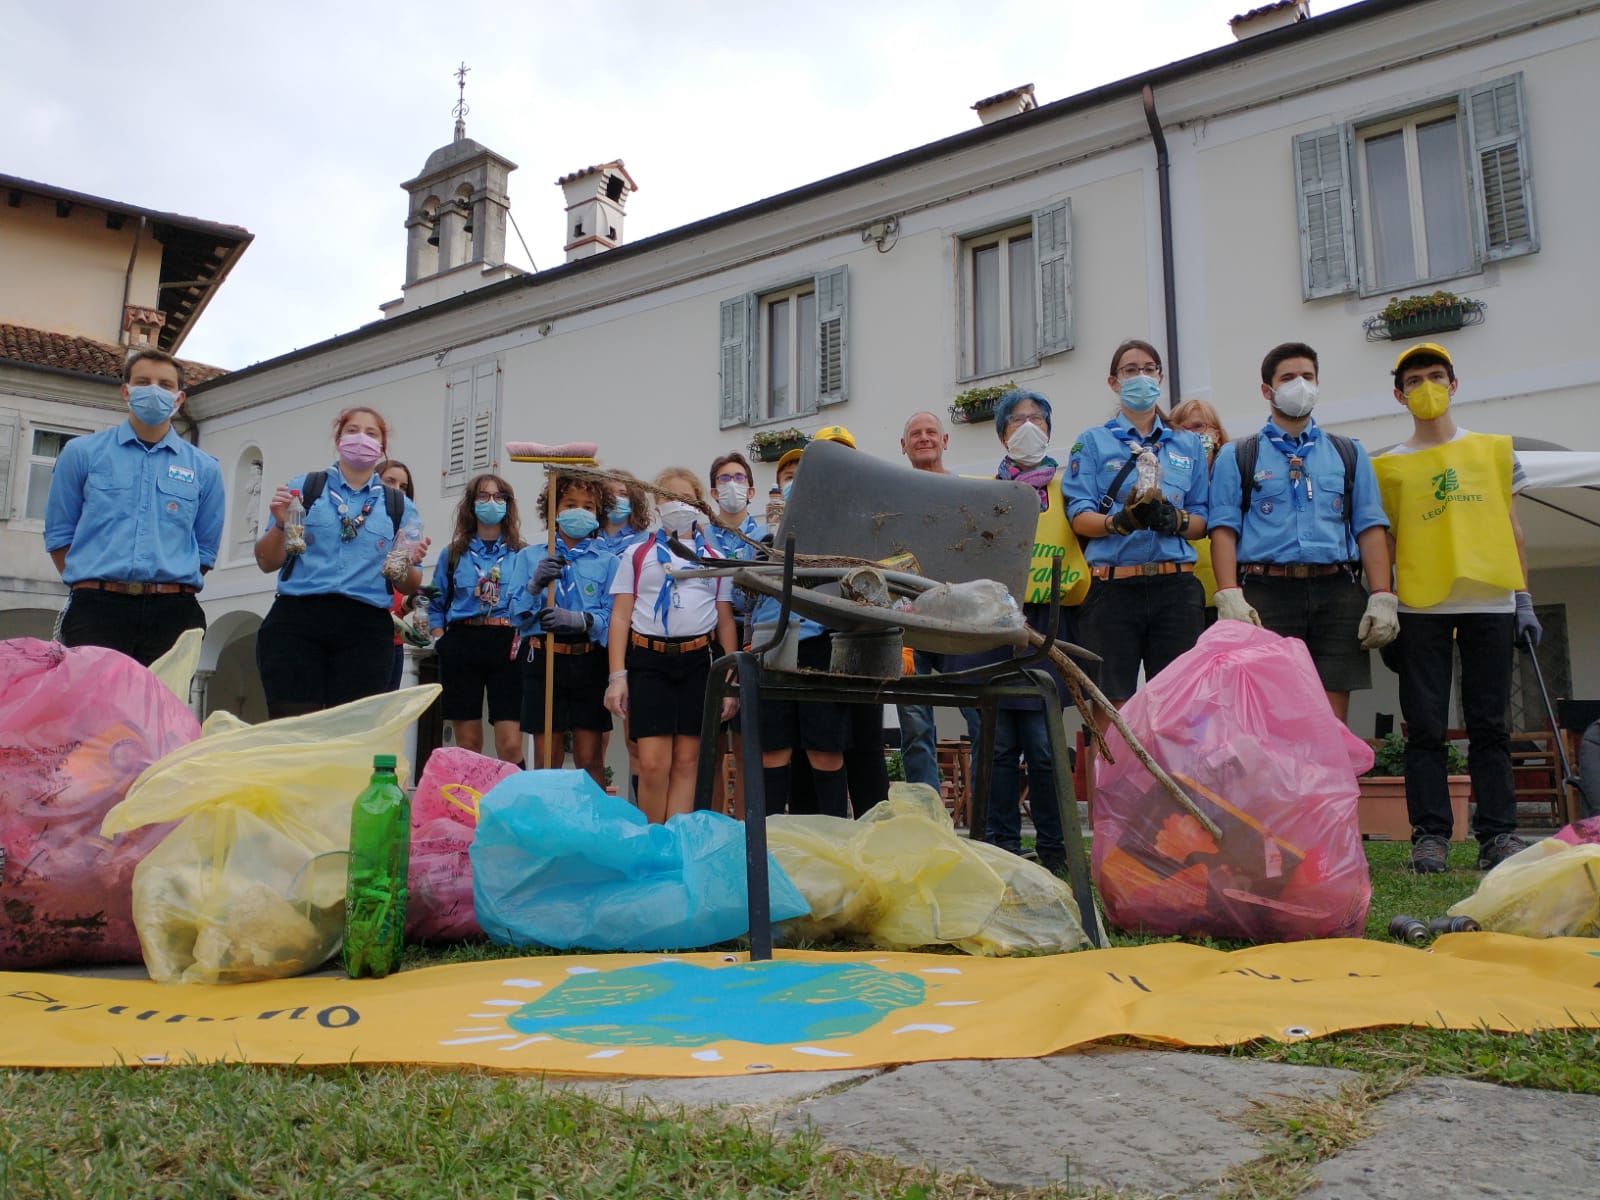 Mozziconi e lattine buttati per strada, volontari in campo per ripulire Gorizia